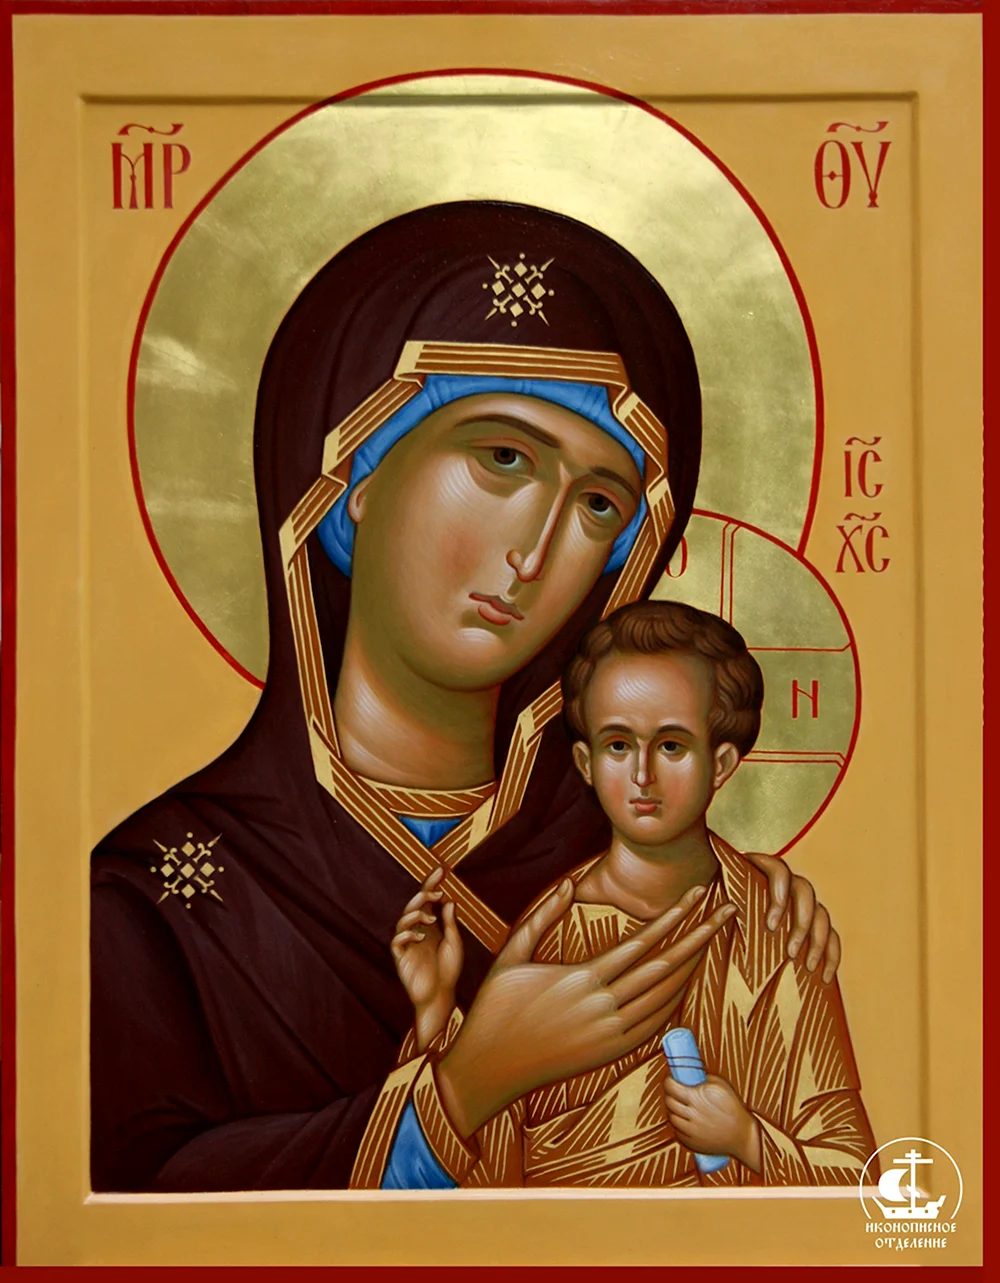 Петровская икона Пресвятой Богородицы